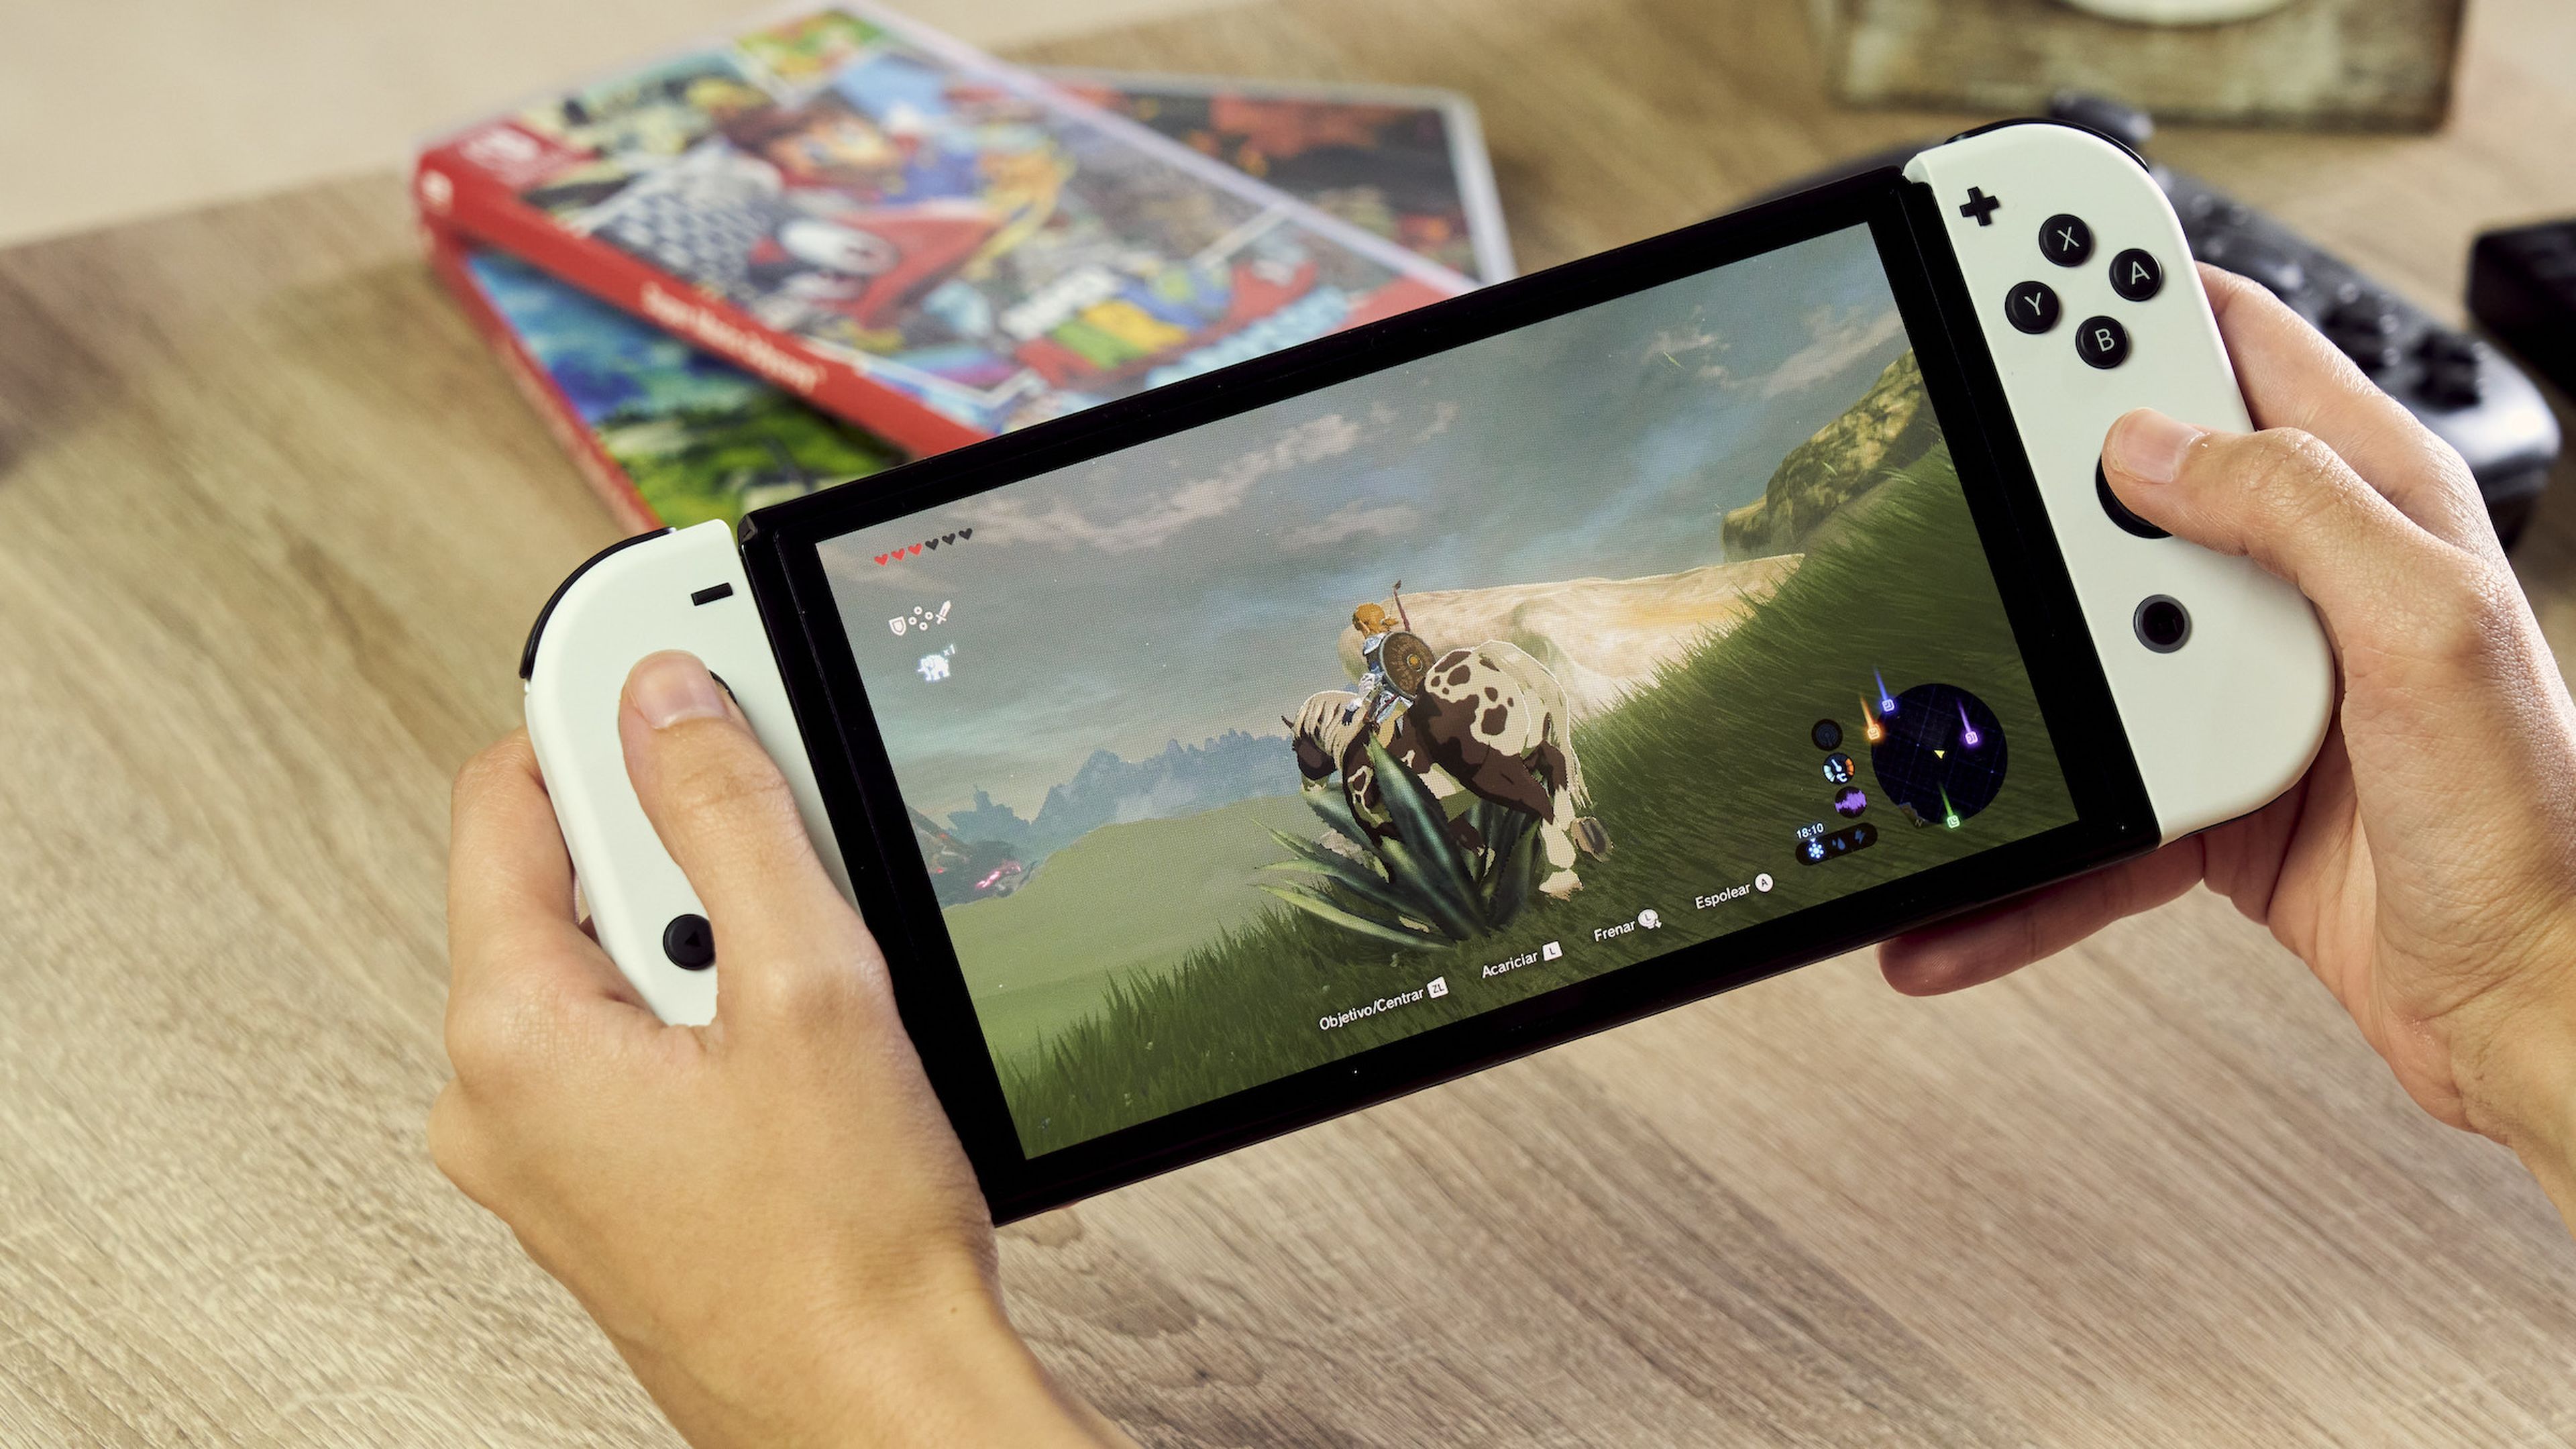 esperes nueva consola de Nintendo: "la switch está a de ciclo de vida" | Computer Hoy